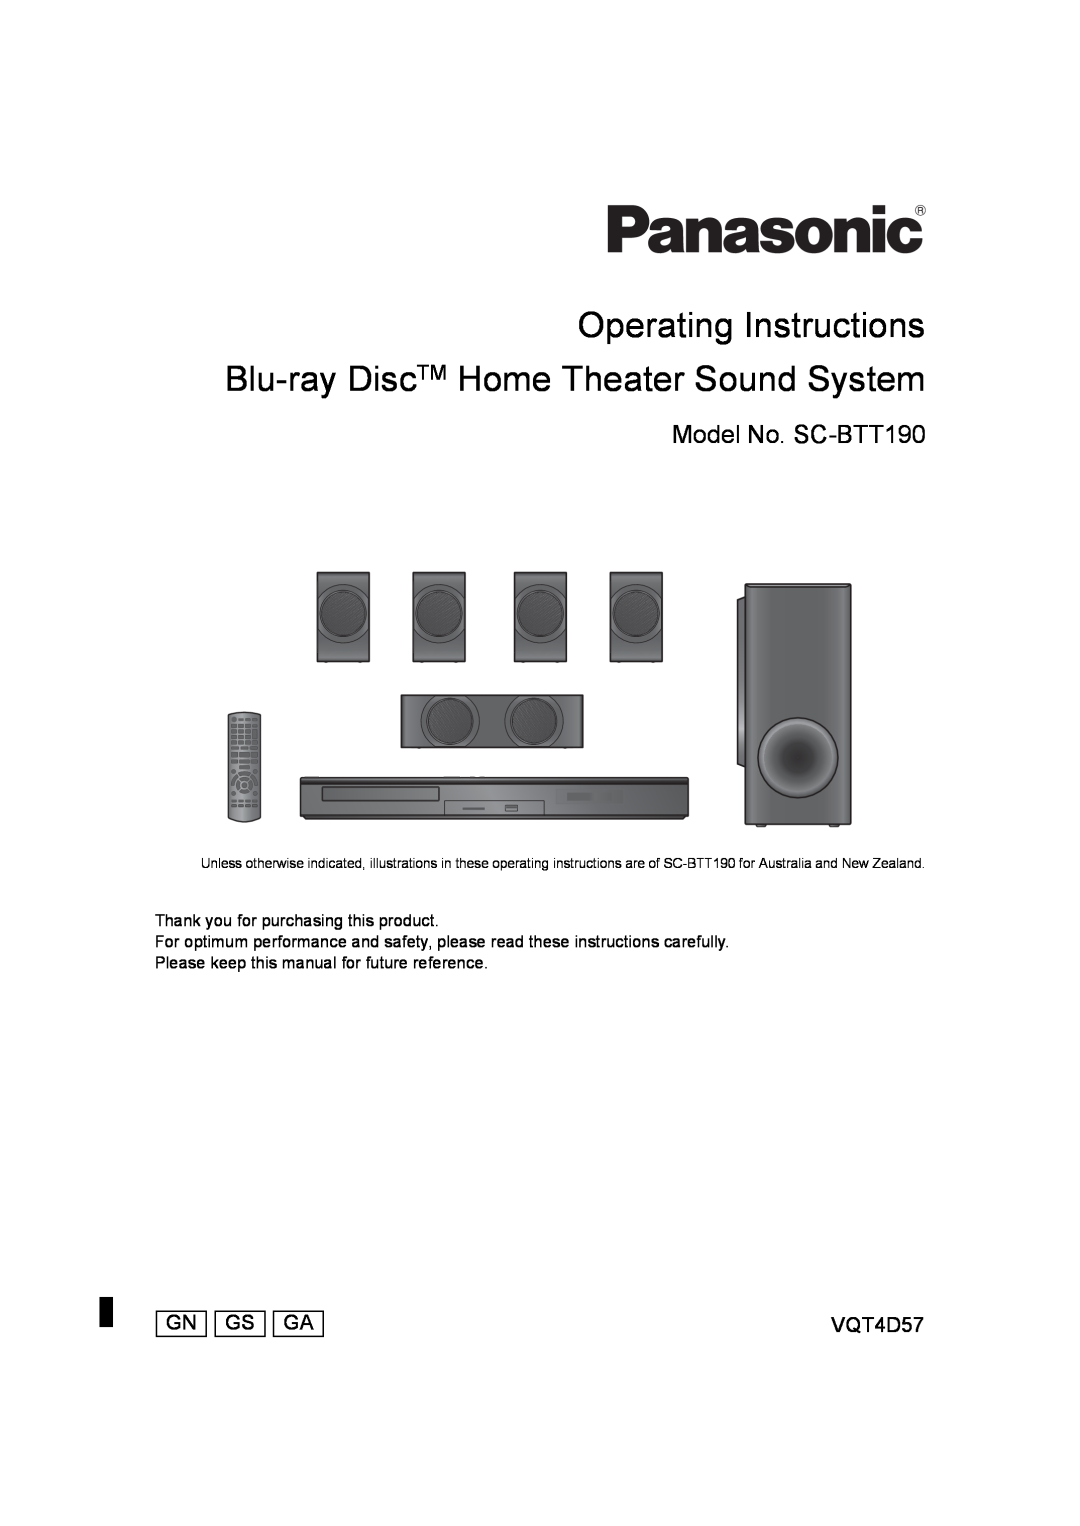 Panasonic manual Model No. SC-BTT190, Gn Gs Ga, VQT4D57 